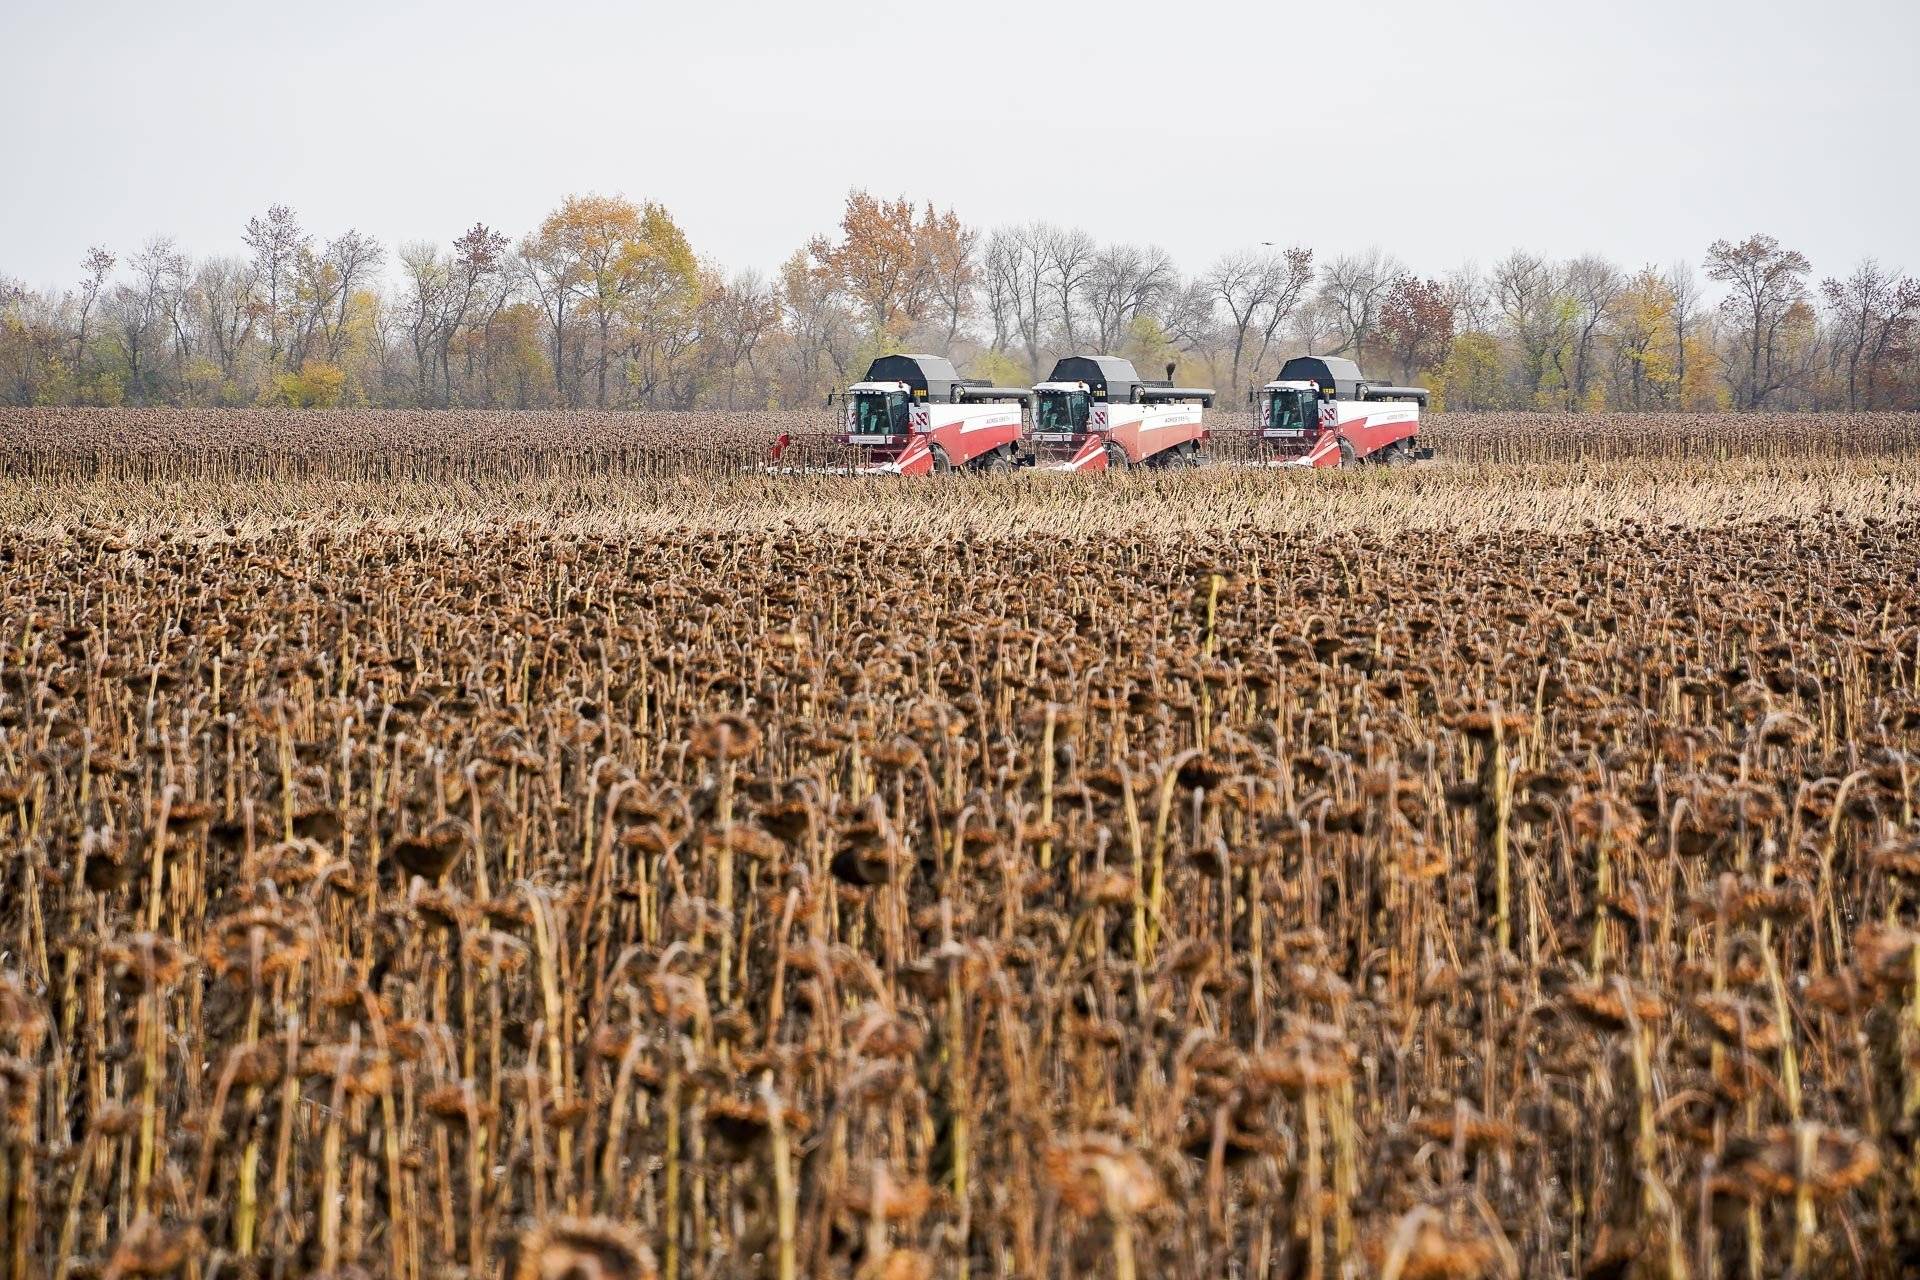 Правила уборки урожая кукурузы с полей для разных целей: на зерно, для попкорна и на силос